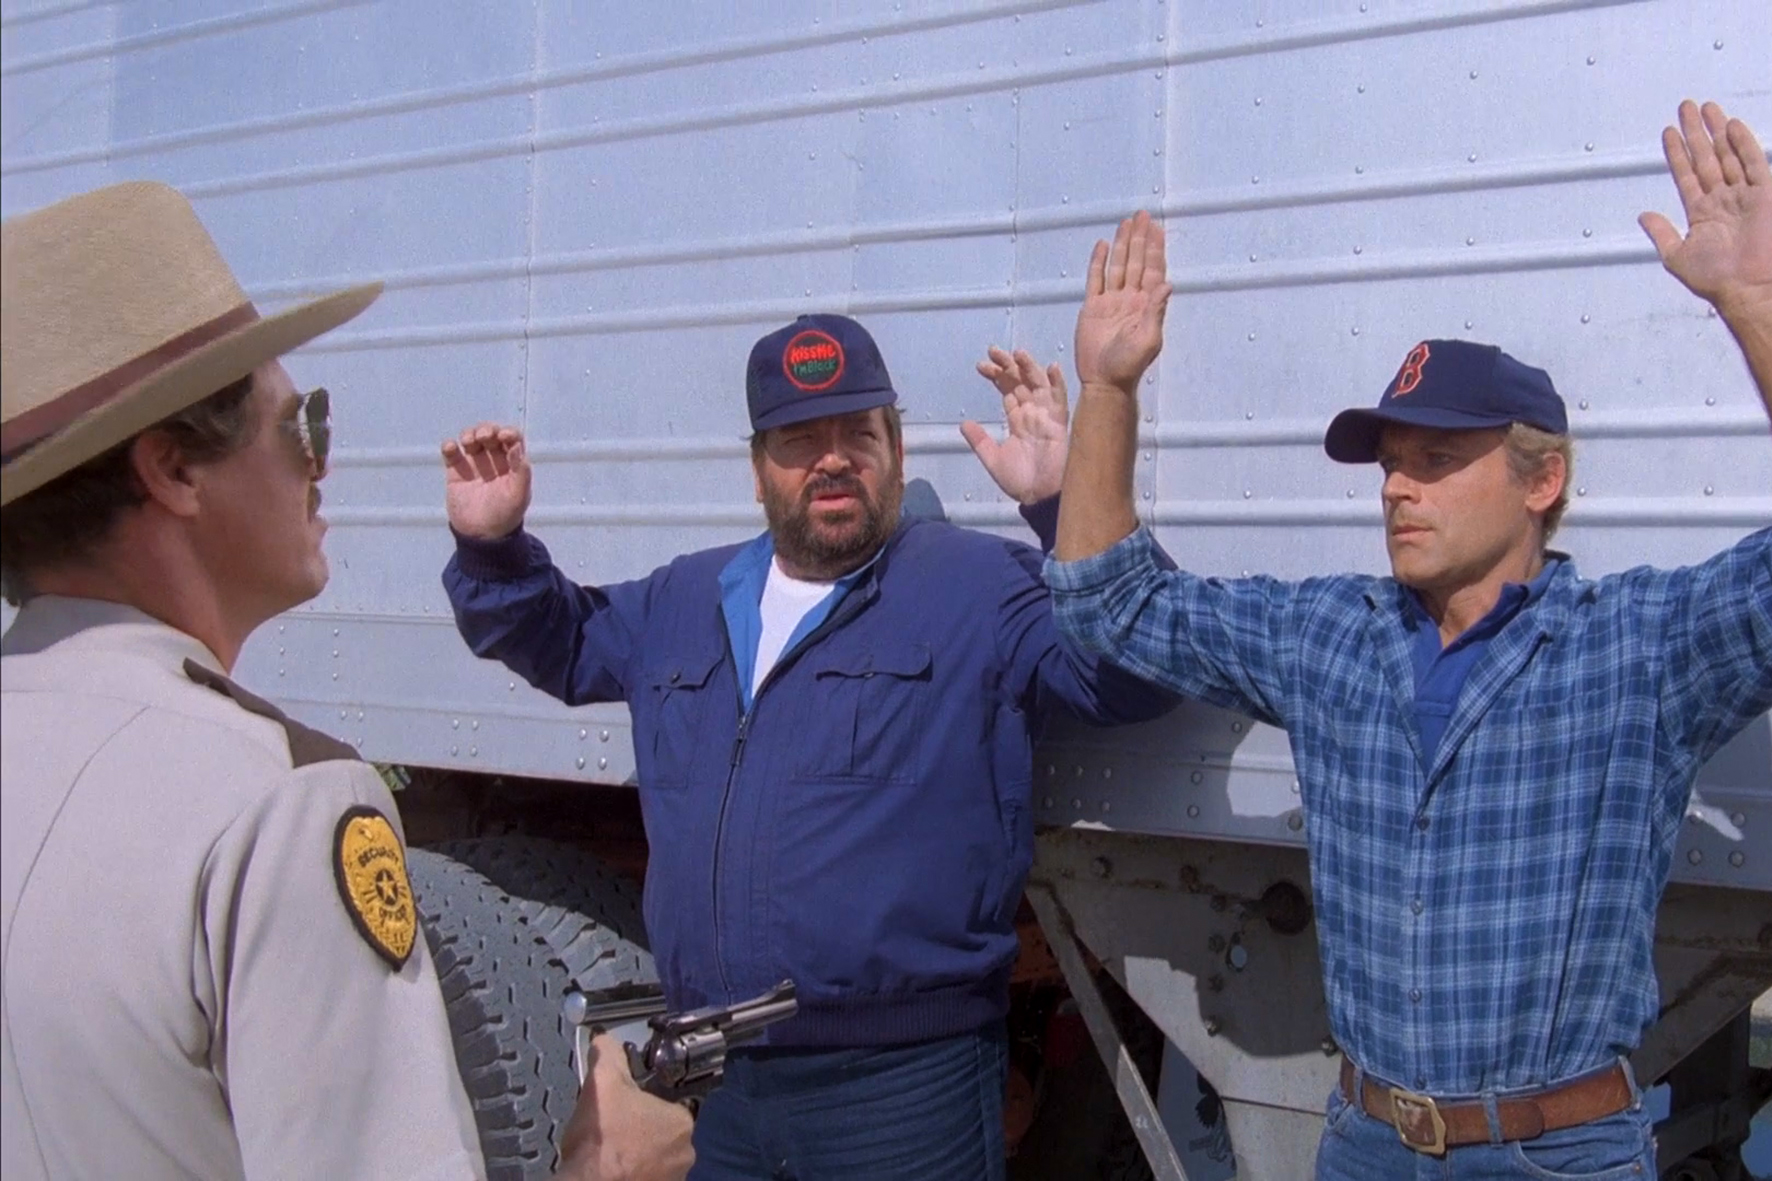 Bus Spencer und Terence Hill in einer Filmszene. Sie stehen mit erhobenen Händen vor einem LKW, während ein Polizist die Pistole auf sie richtet.